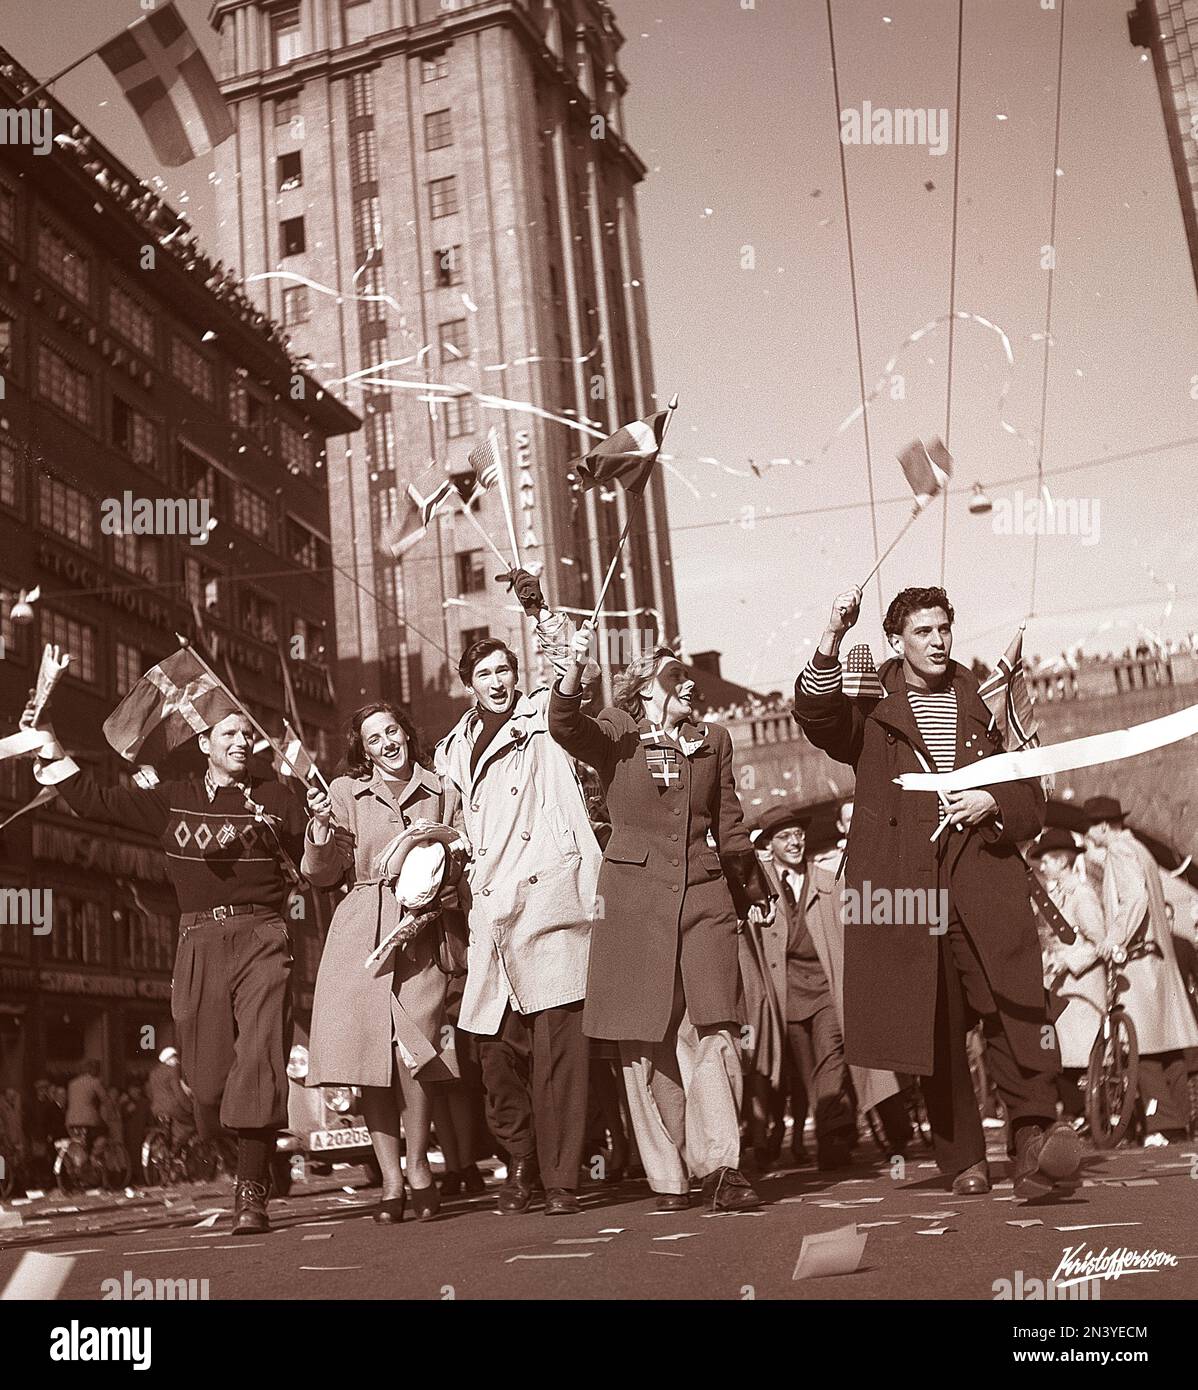 Célébration de la paix 1945. Le peuple de Stockholm célèbre la fin de la Seconde Guerre mondiale Les hommes et les femmes sont photographiés marchant sur Kungsgatan le jour où la paix a été proclamée en Europe Suède 7 mai 1945s. Photo Kristoffersson N128-2 Banque D'Images